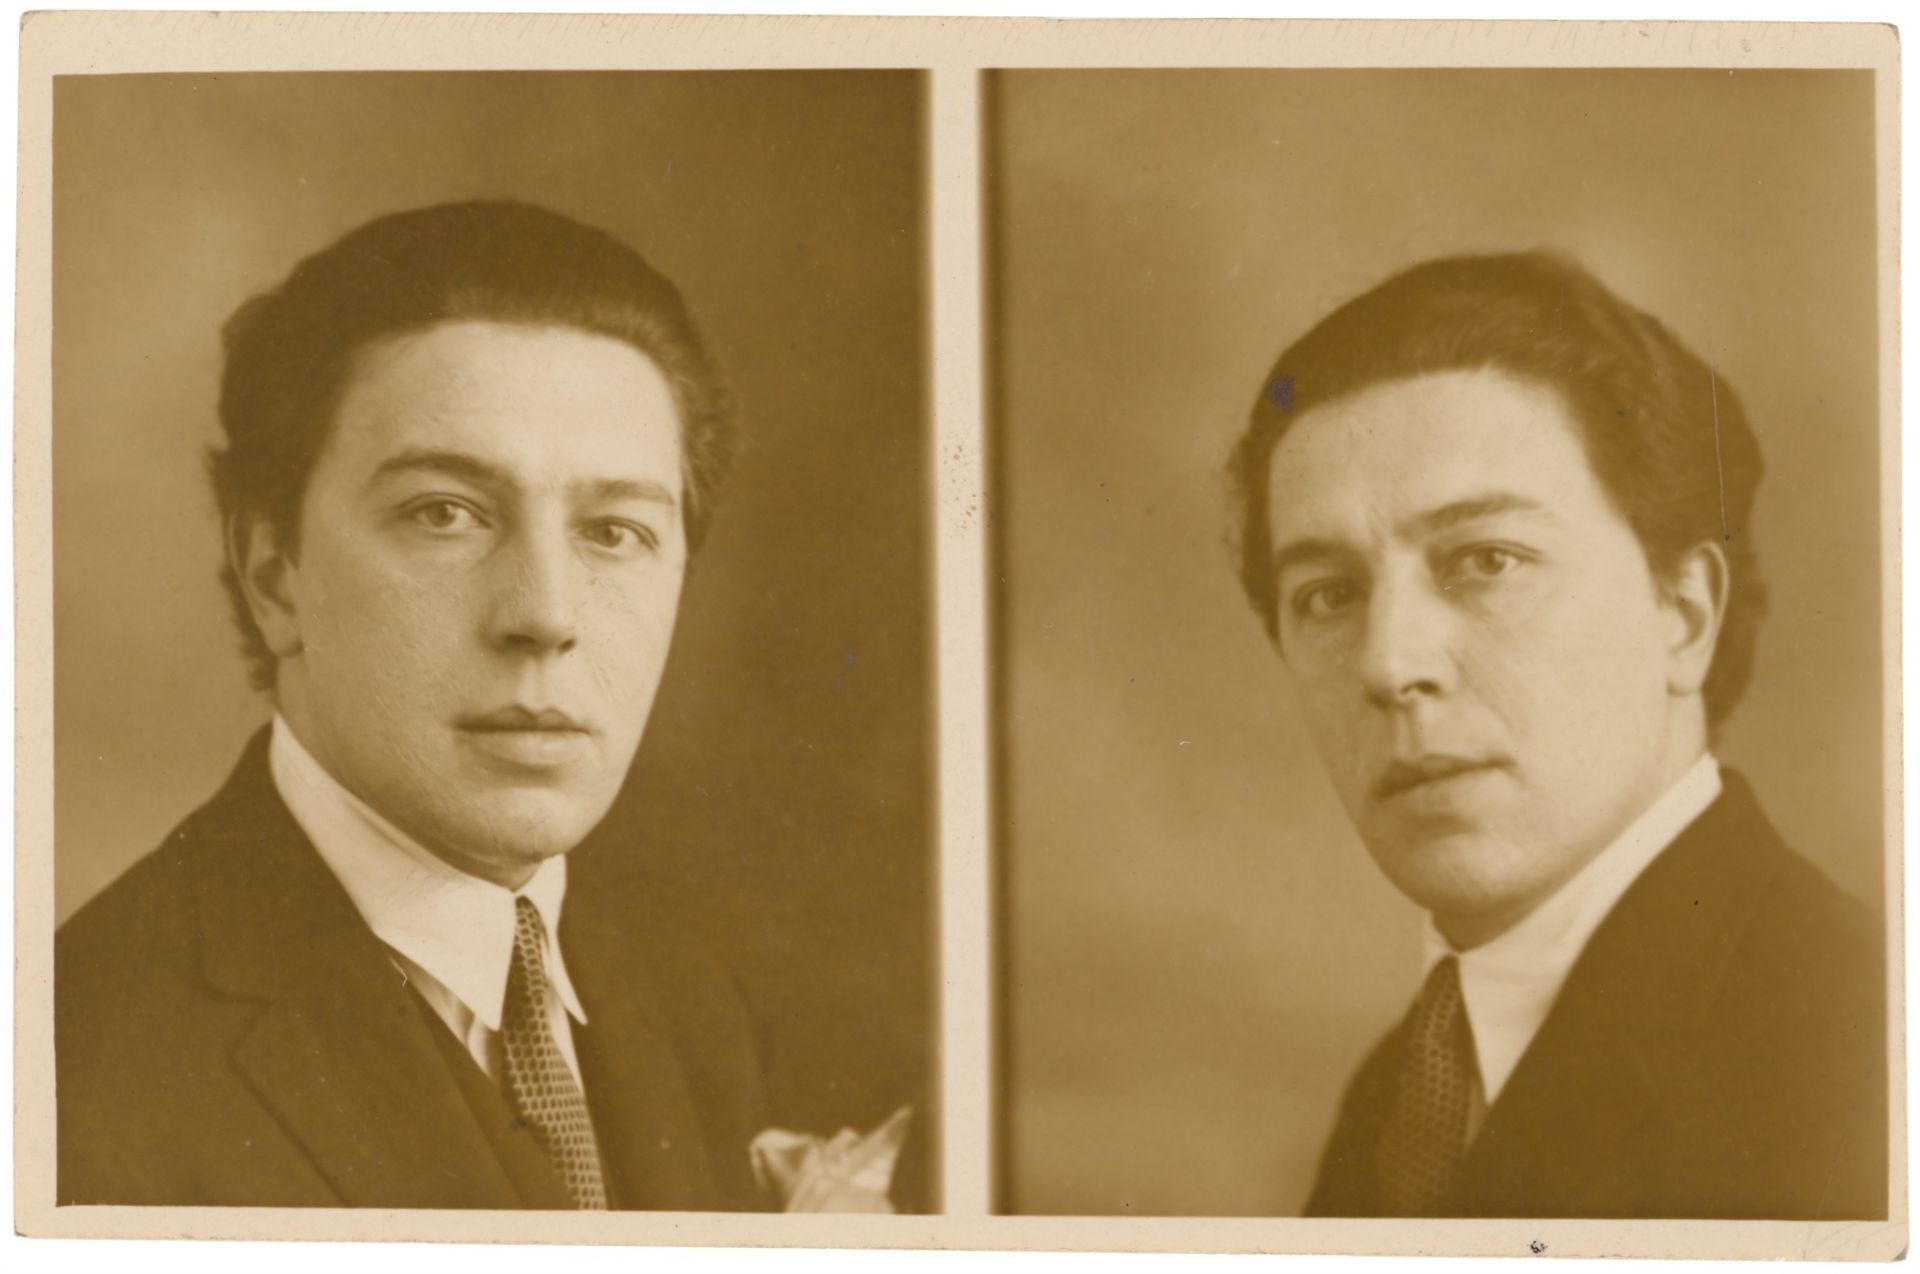 Ateliers Jerome Paris. André Breton. Doppelporträt. 1927